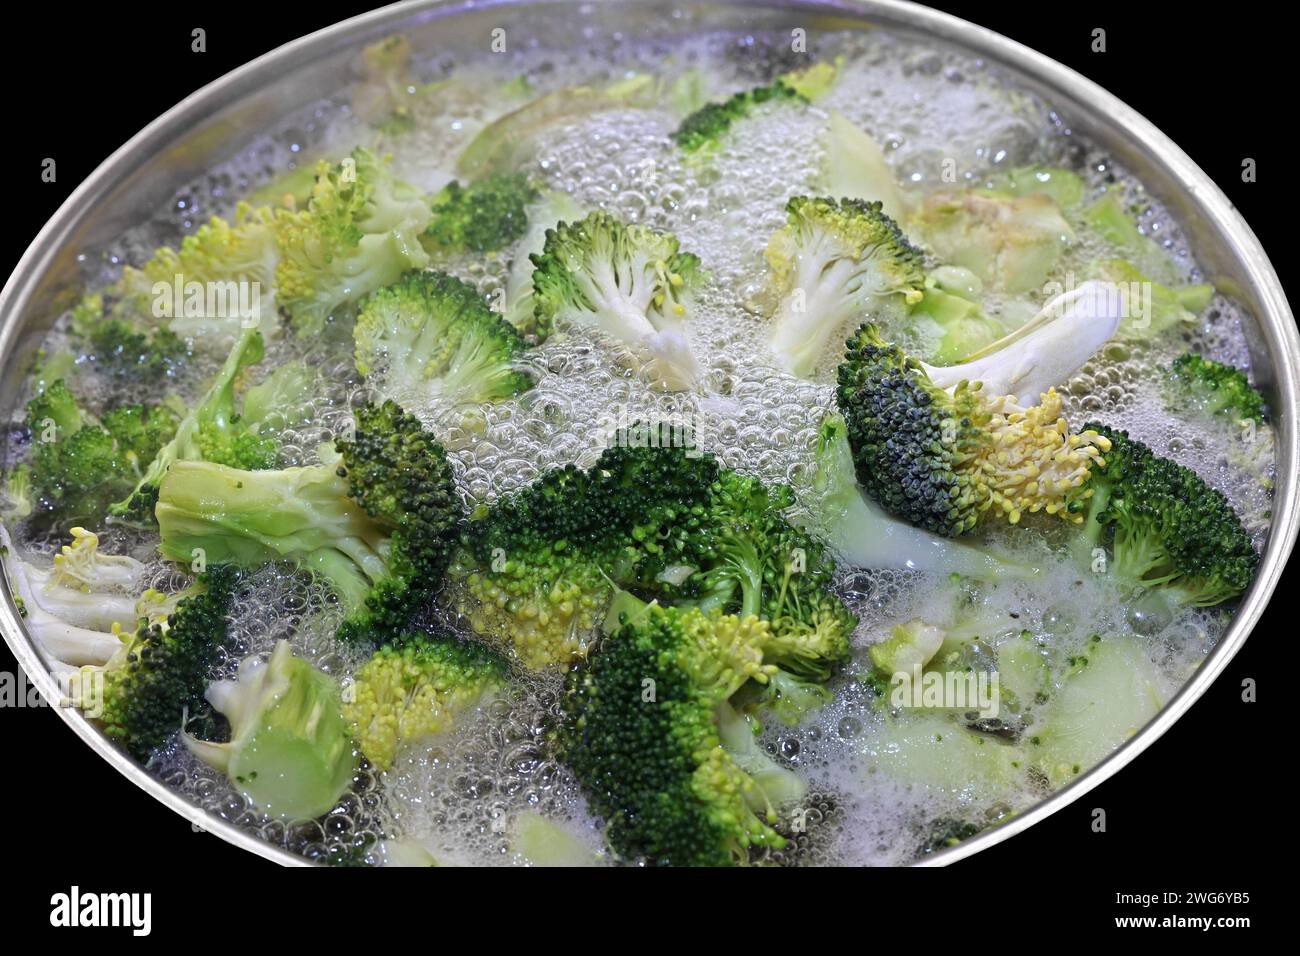 Gemüsepflanzen für die Küche BEARBEITET: In einem Topf mit kochendem Wasser wird Brokkoli blanchiert *** Gemüsepflanzen für die Küche VERARBEITETER Brokkoli wird in einem Topf mit kochendem Wasser blanchiert Stockfoto